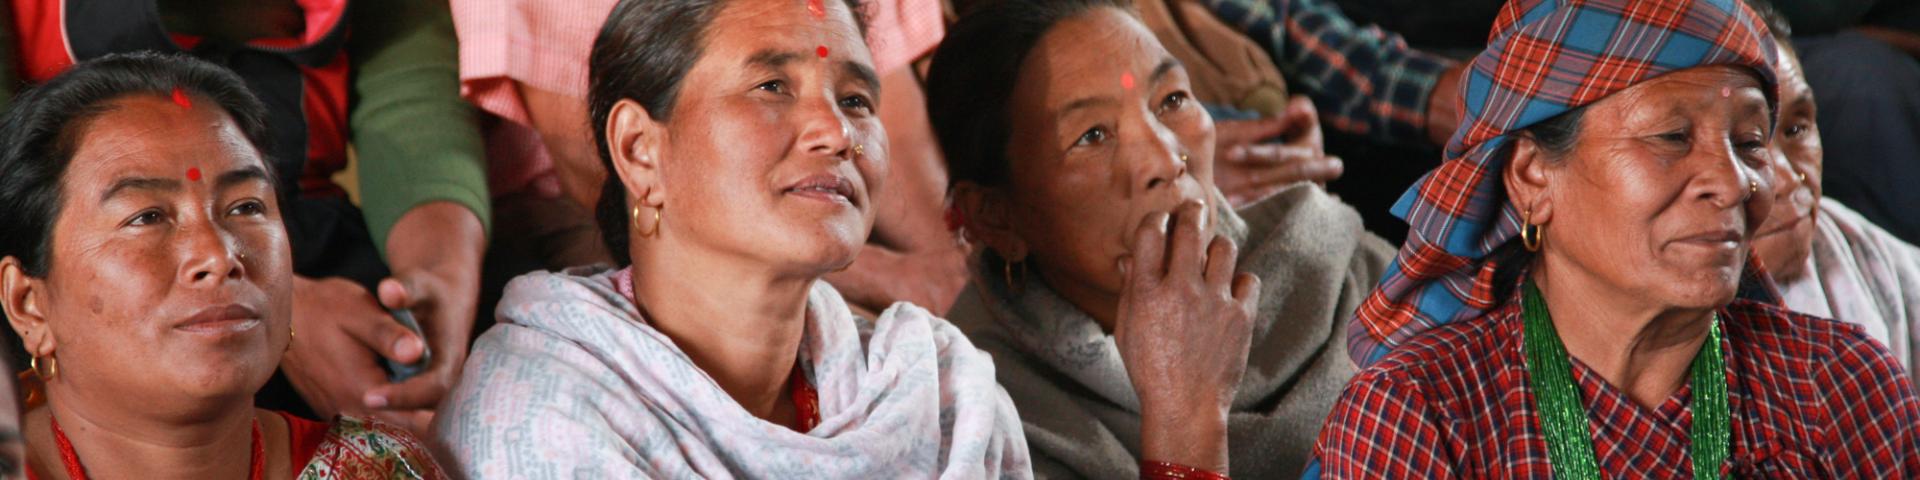 Community WaSH meting in Nepal